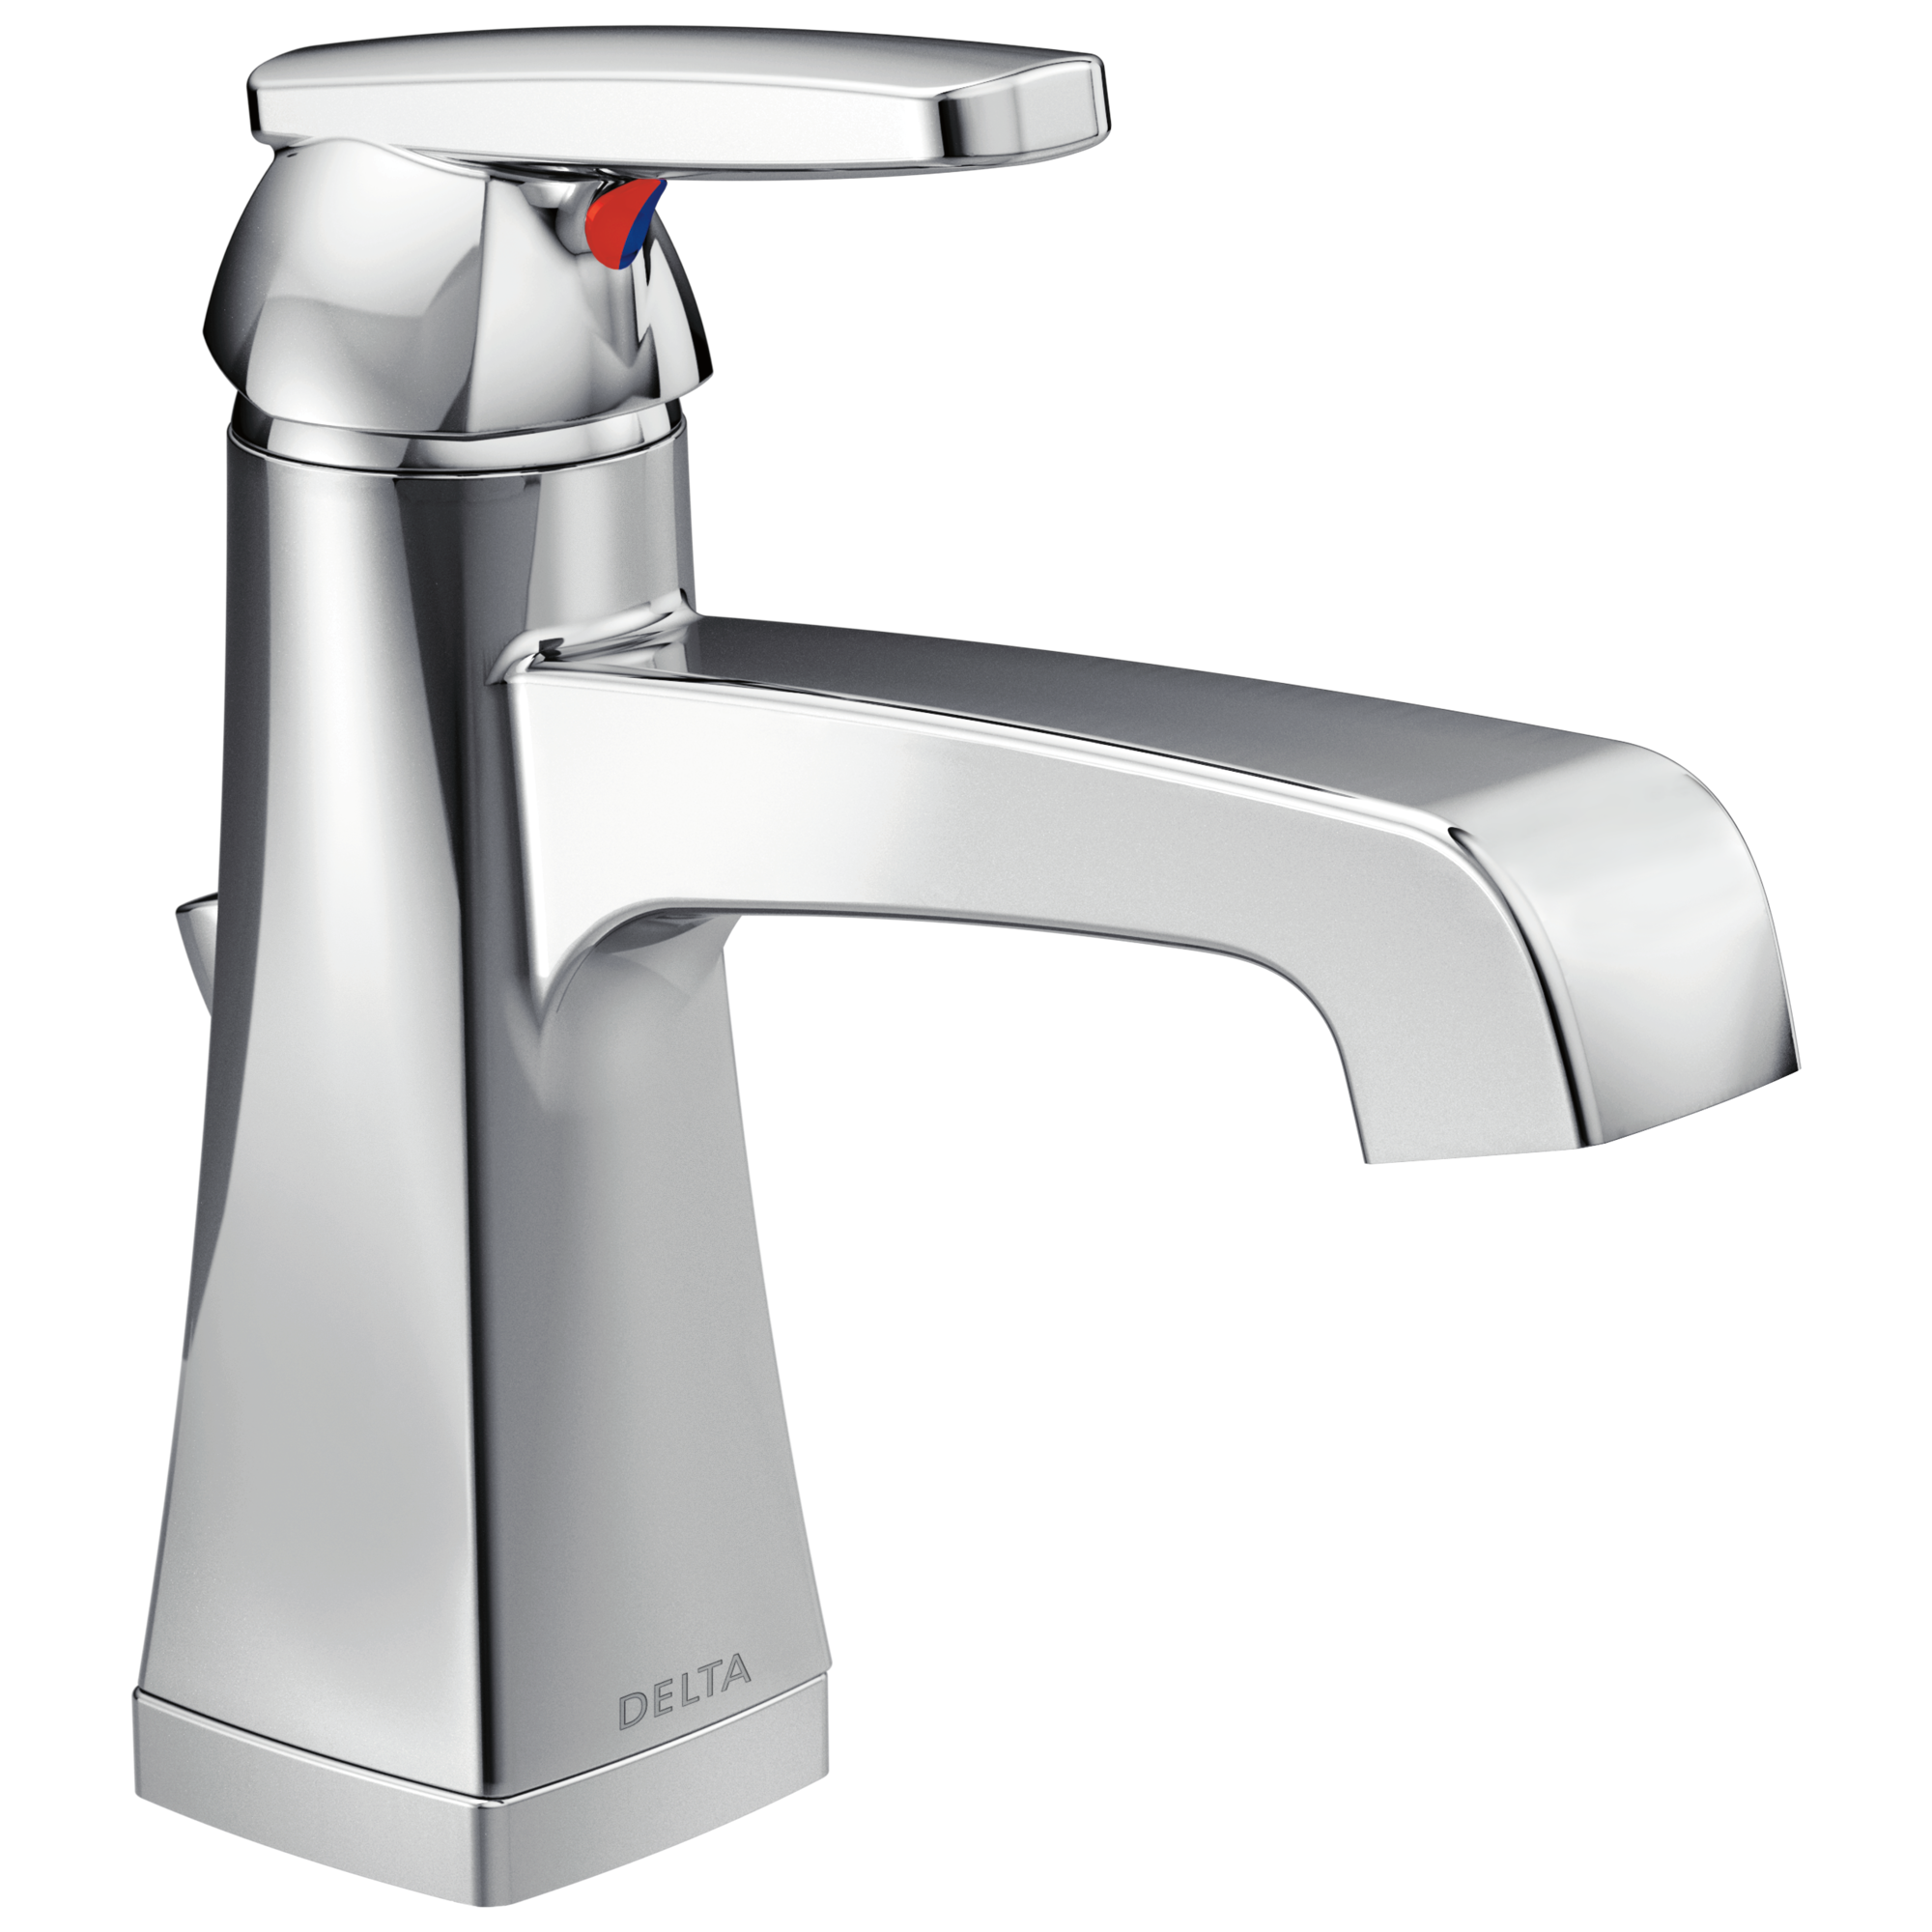 Delta 564 Single Handle Bathroom Faucet